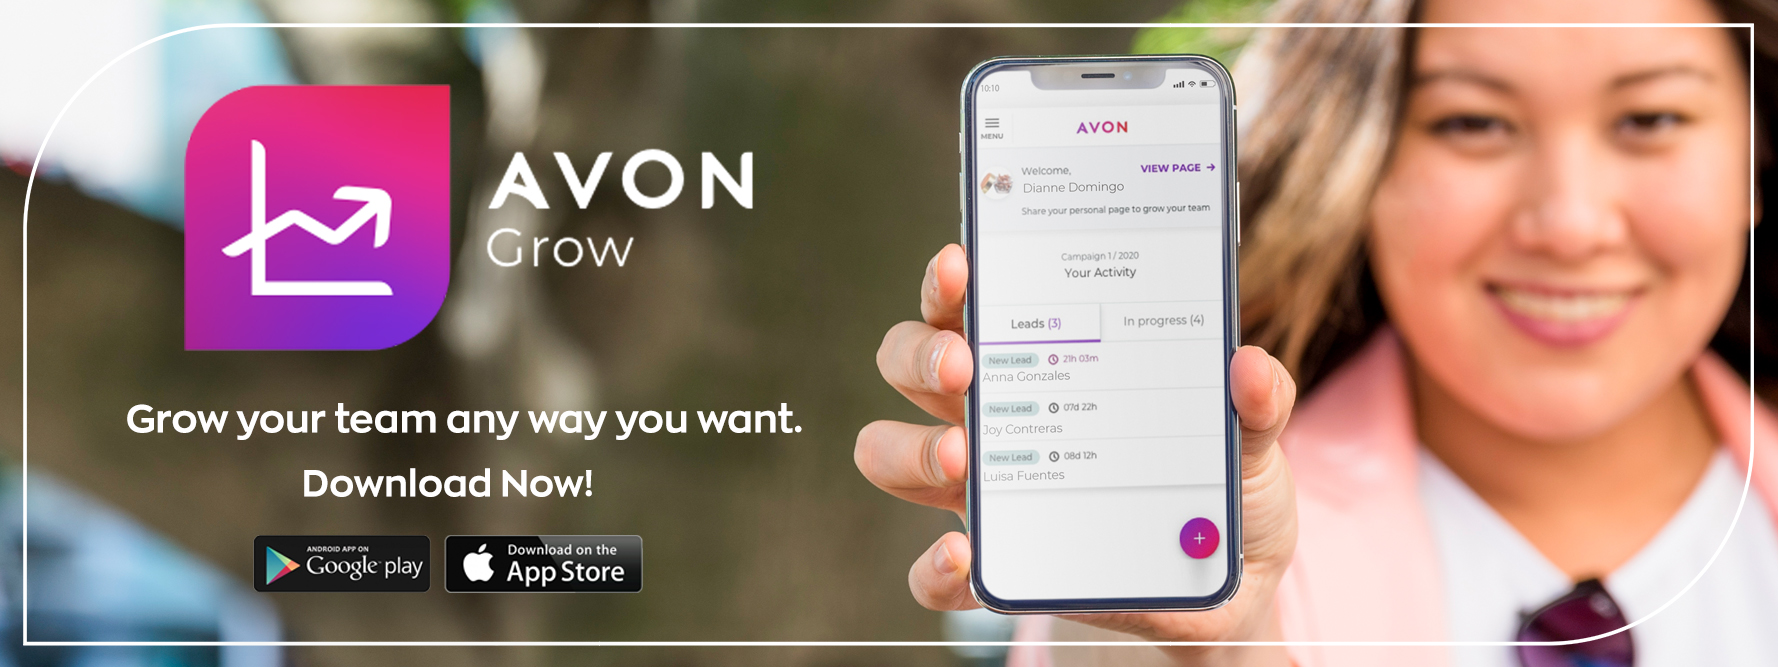 Download Avon Grow App